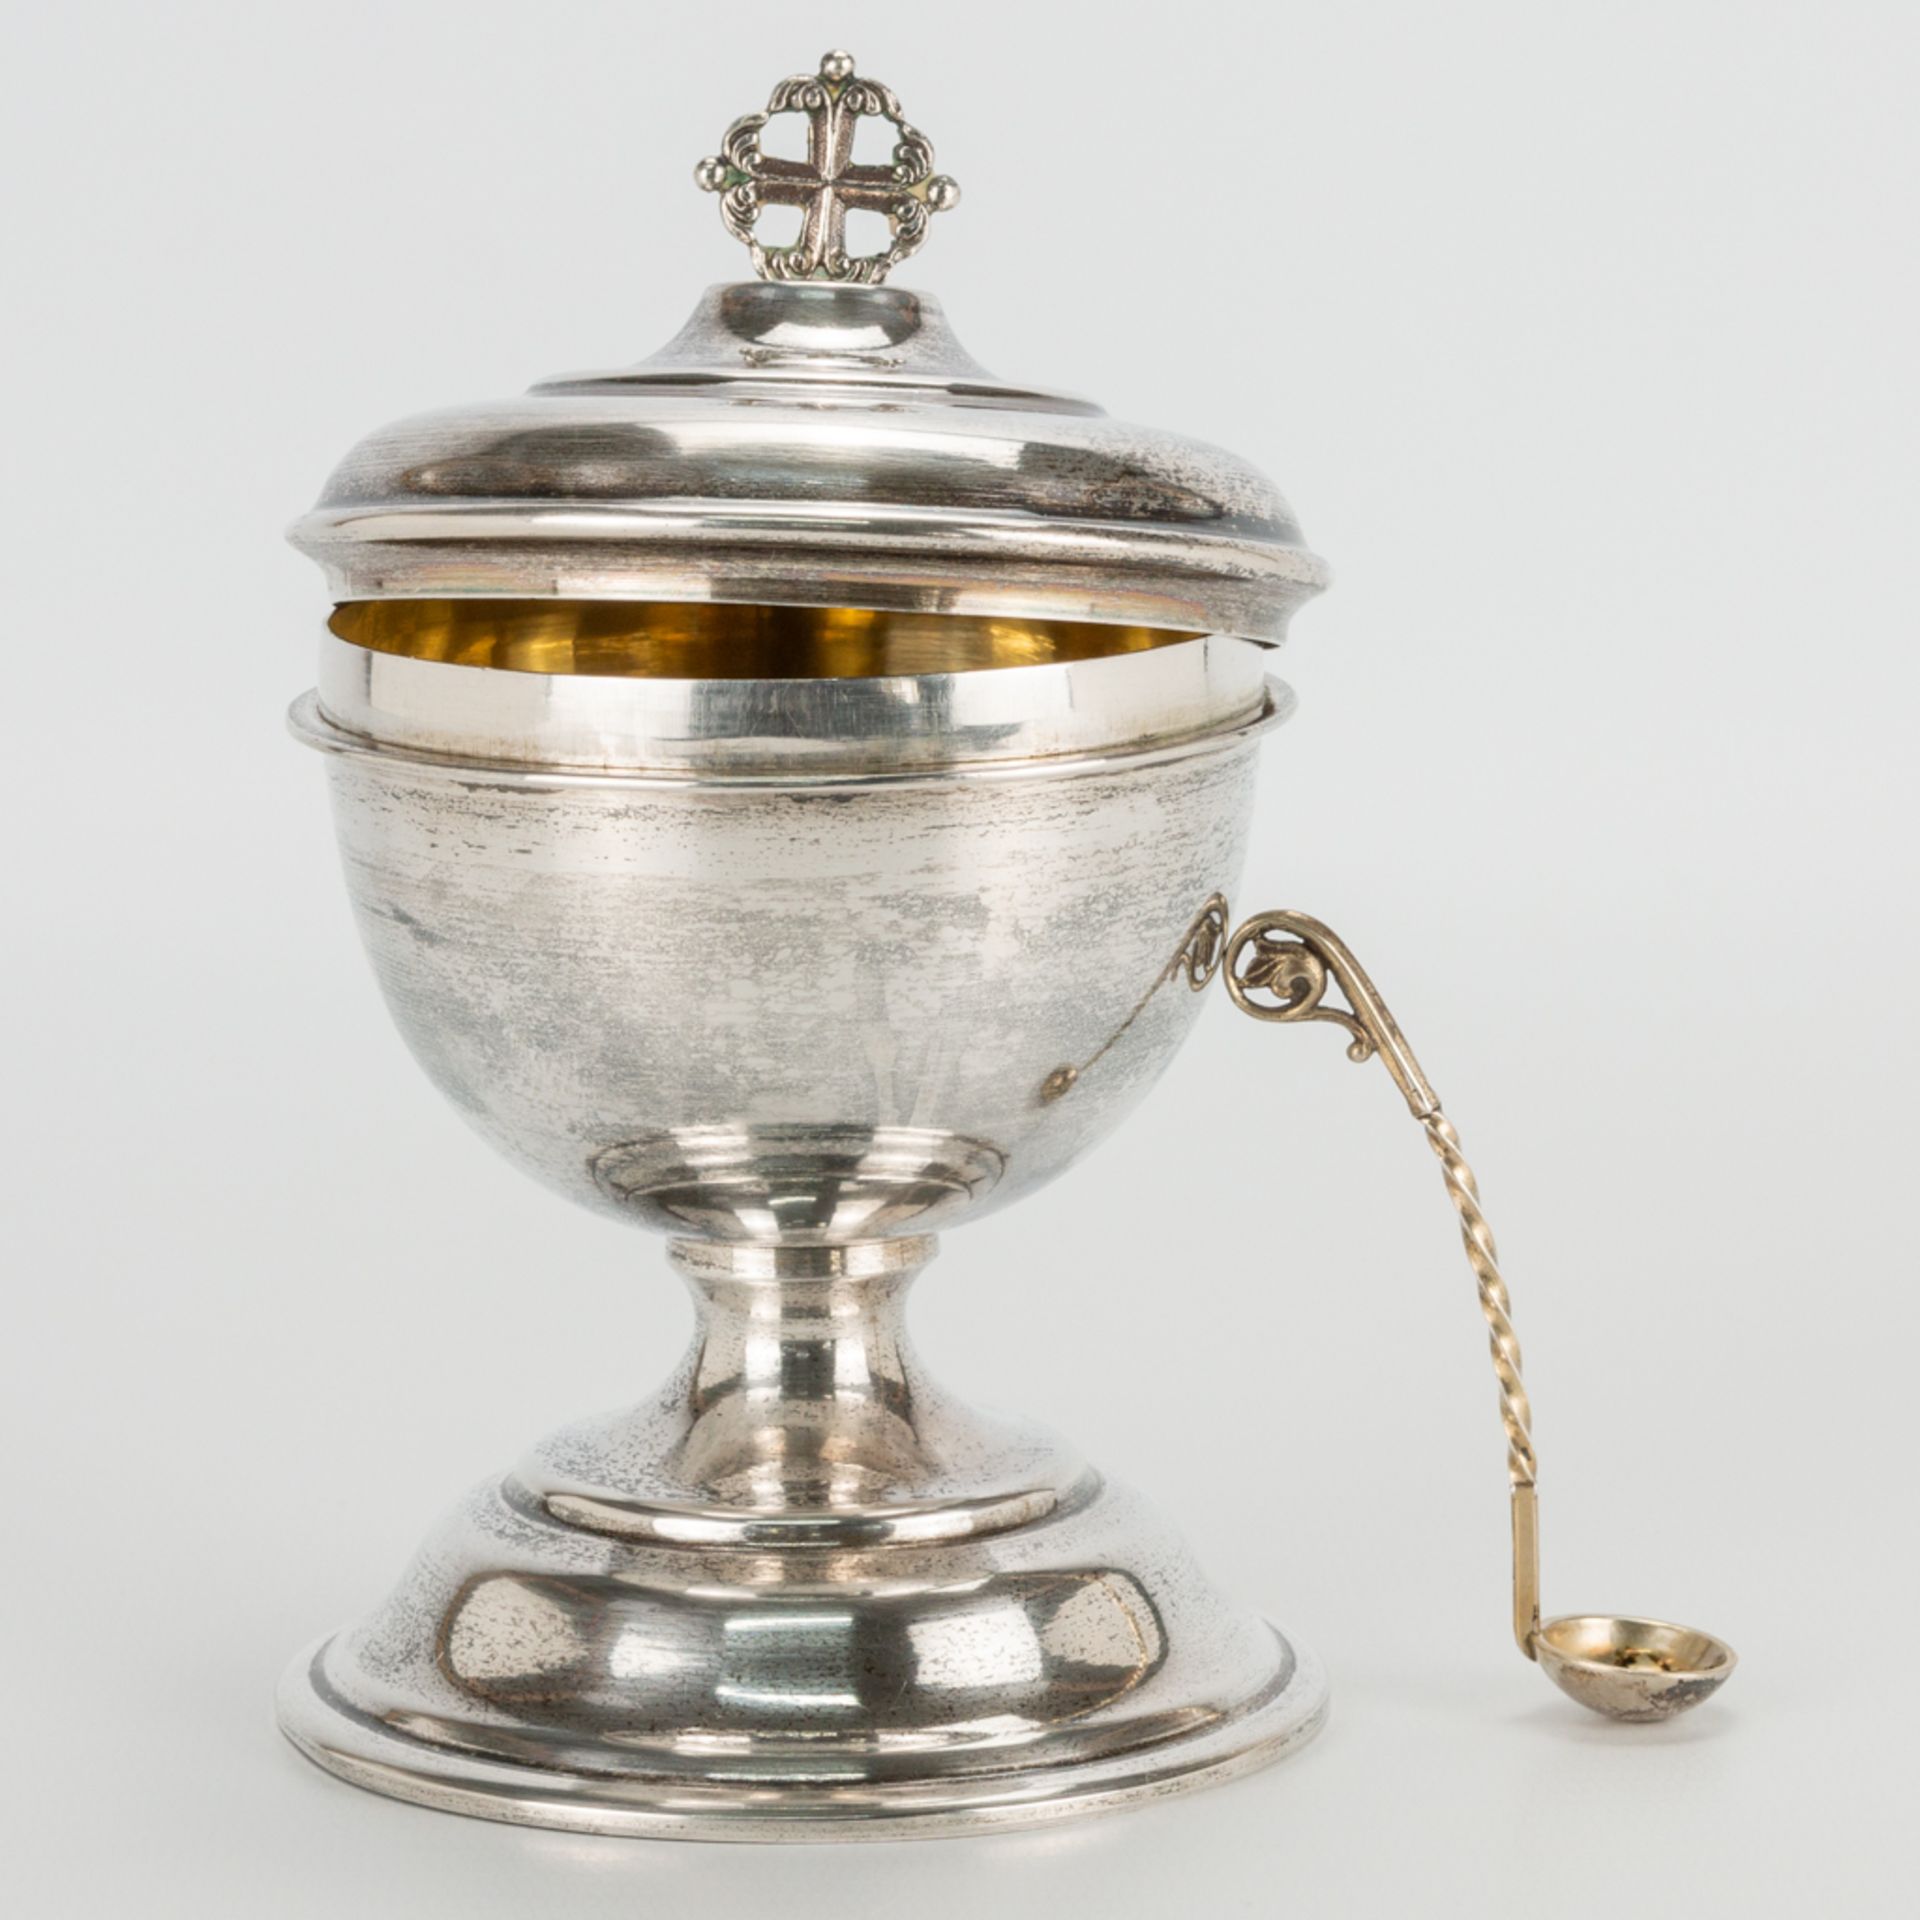 An antique silver ciborium with spoon. . (14 x 9 cm)